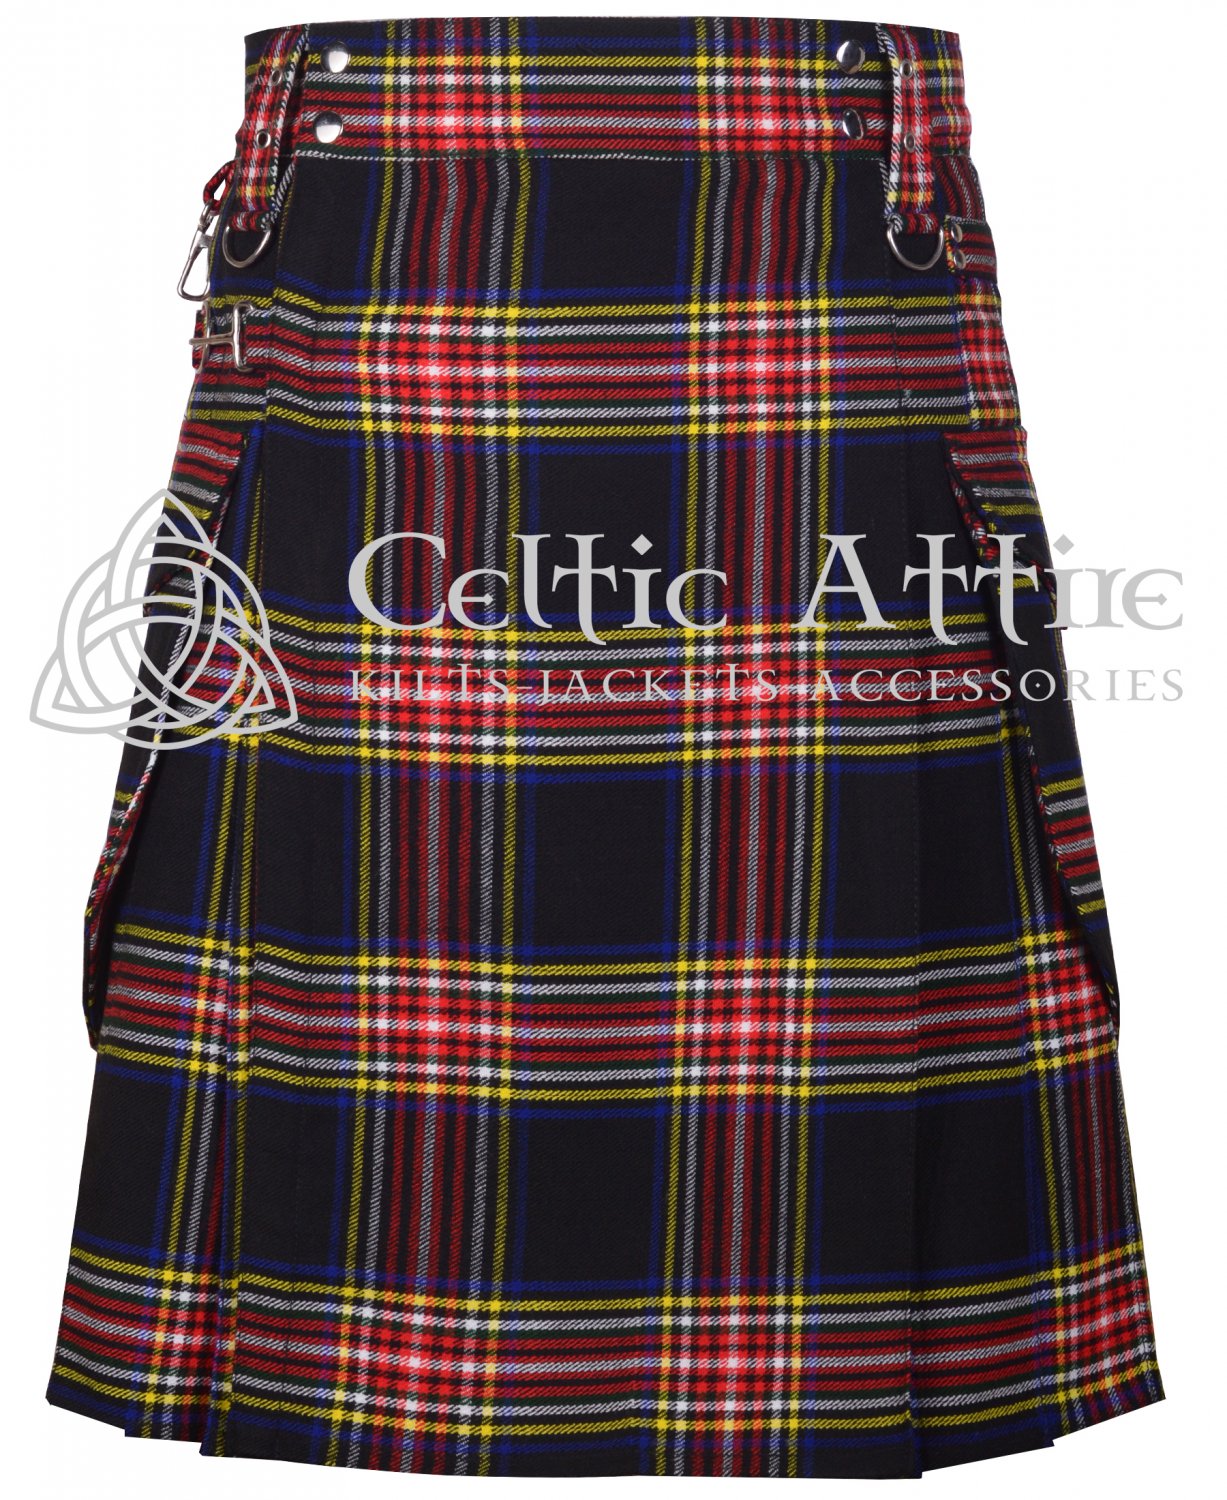 Black Stewart Tartan UTILITY KILT Scottish Cargo Kilt for Men - Custom Size